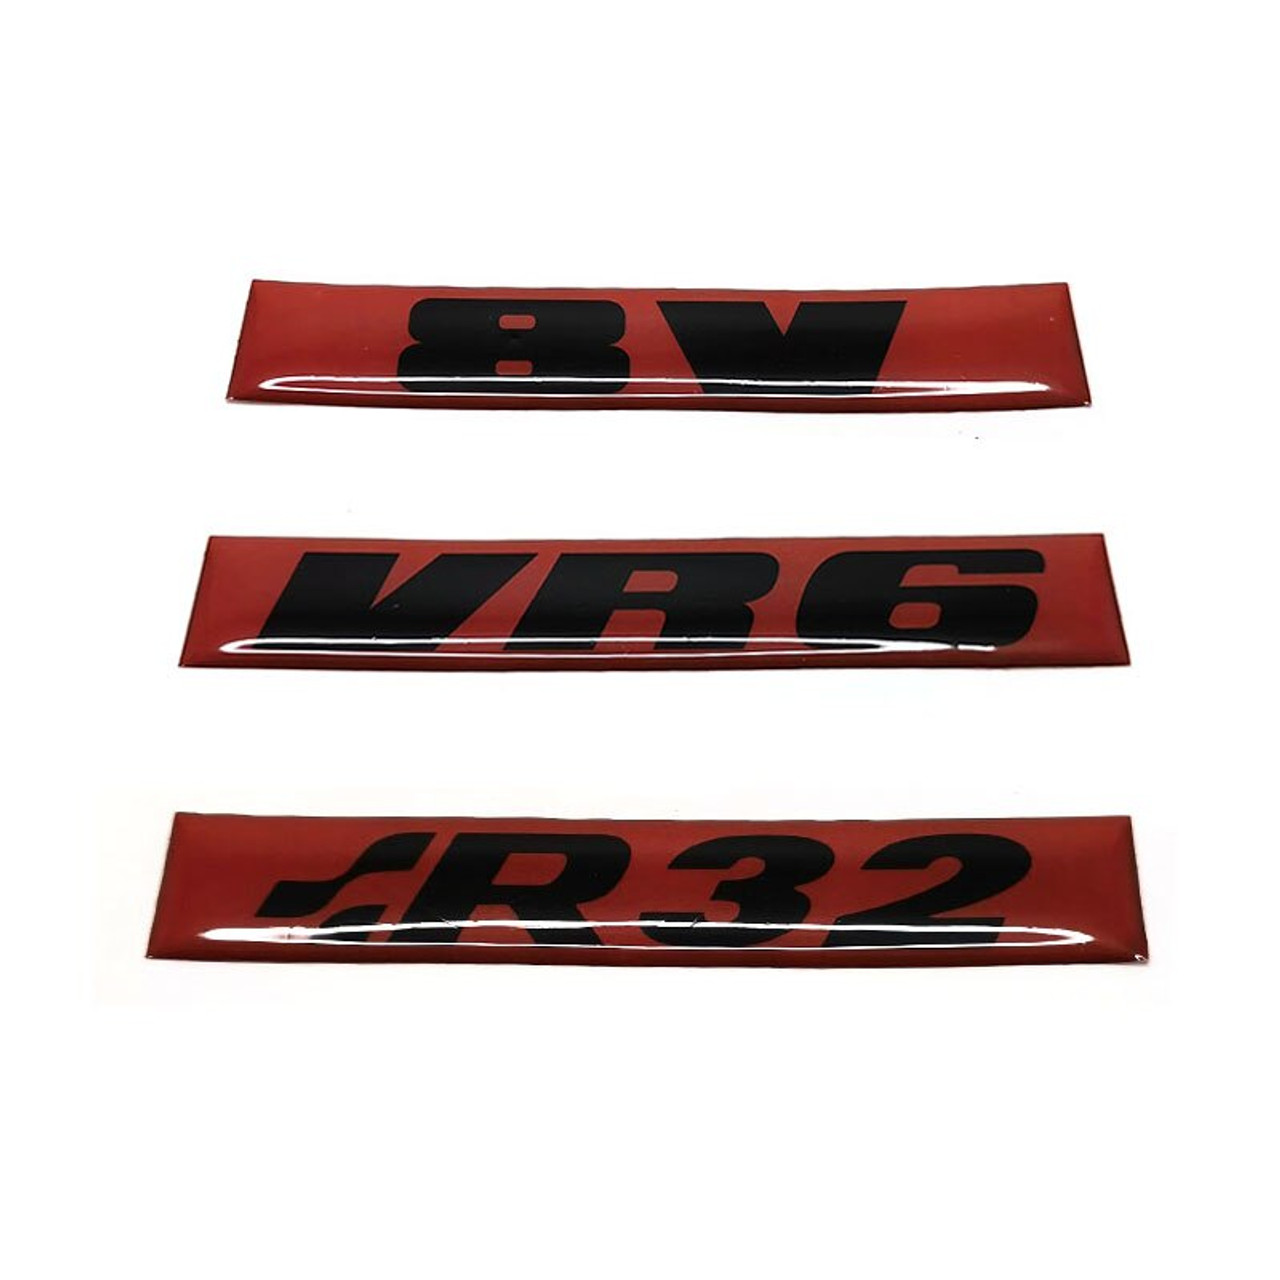 Volkswagen Golf 2 GTI 8V VR6 R32 Emblem Sign Ornament Nameplate Rear